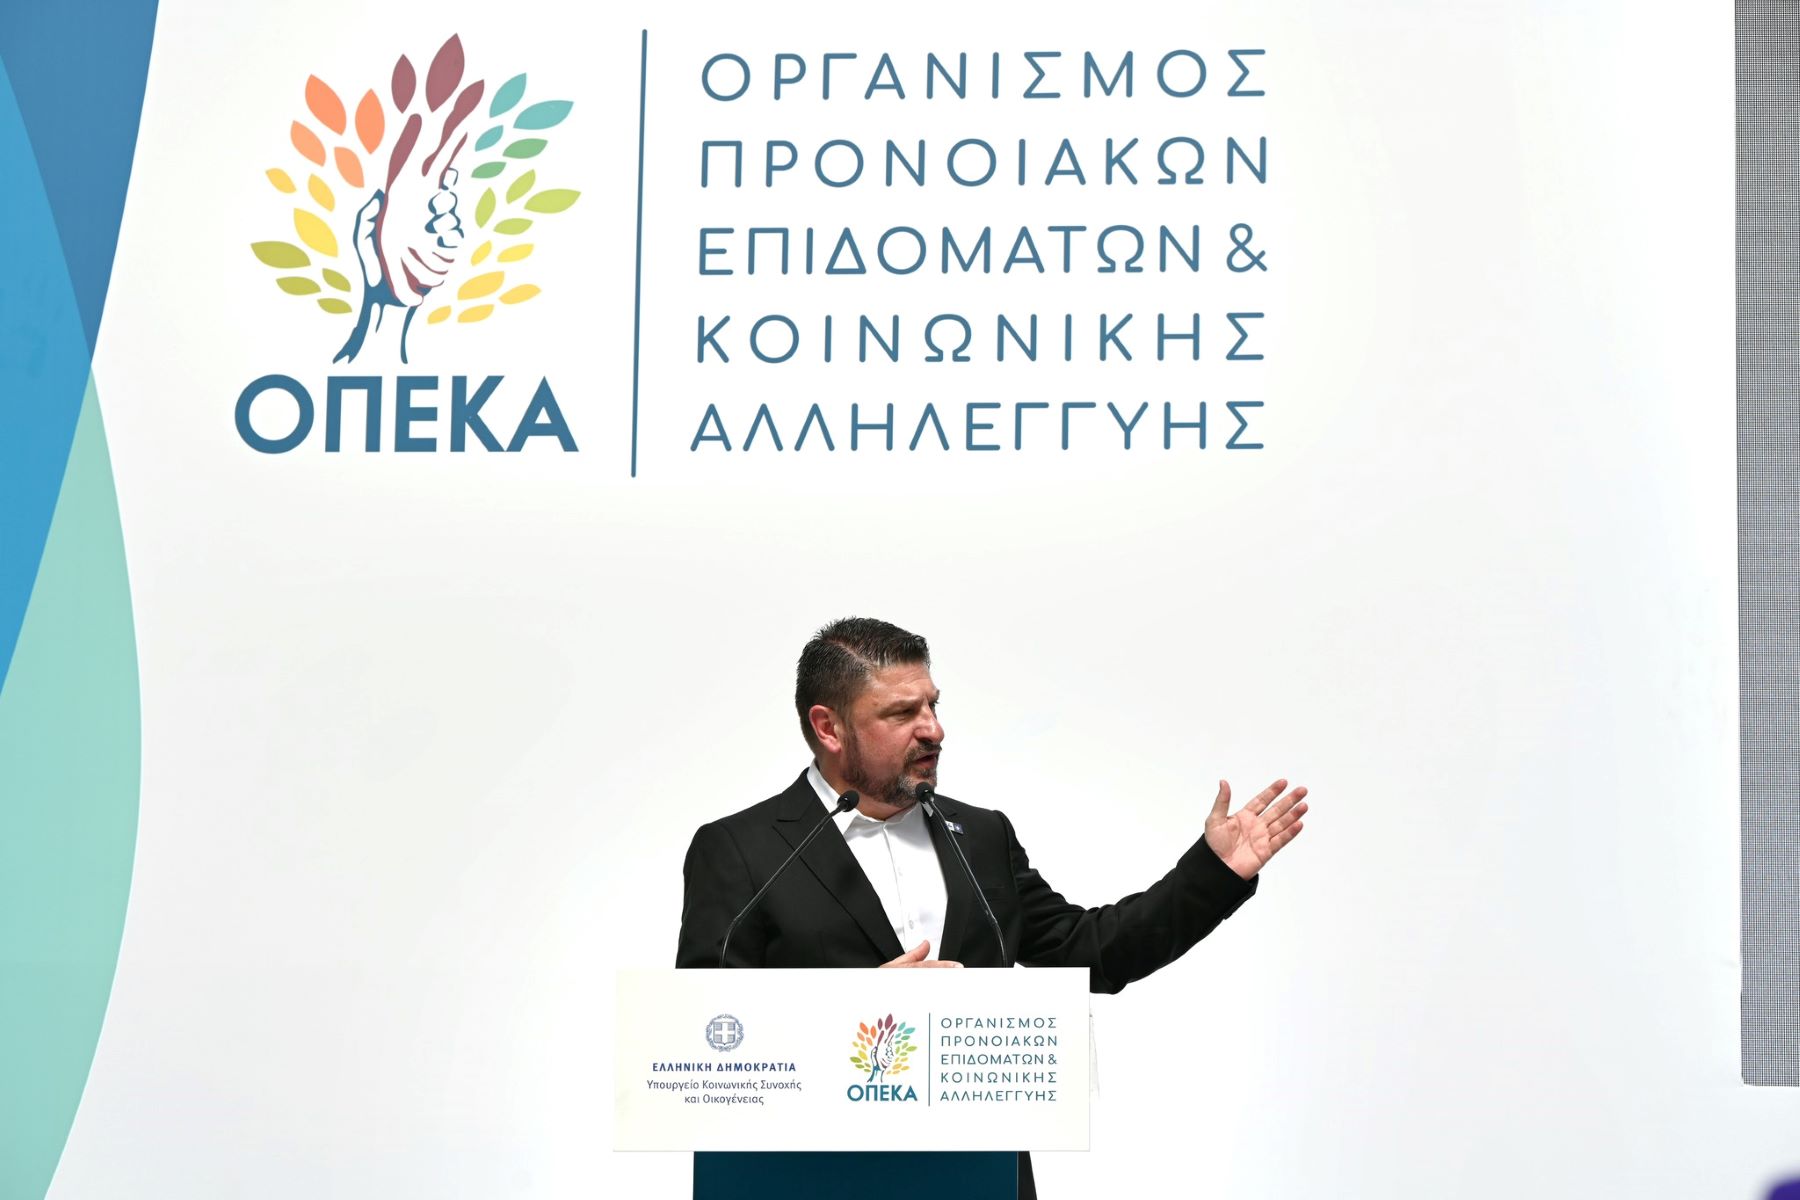 Νίκος Χαρδαλιάς: «640 εκατ. ευρώ από την Περιφέρεια Αττικής για την ενίσχυση των ευάλωτων συμπολιτών μας»